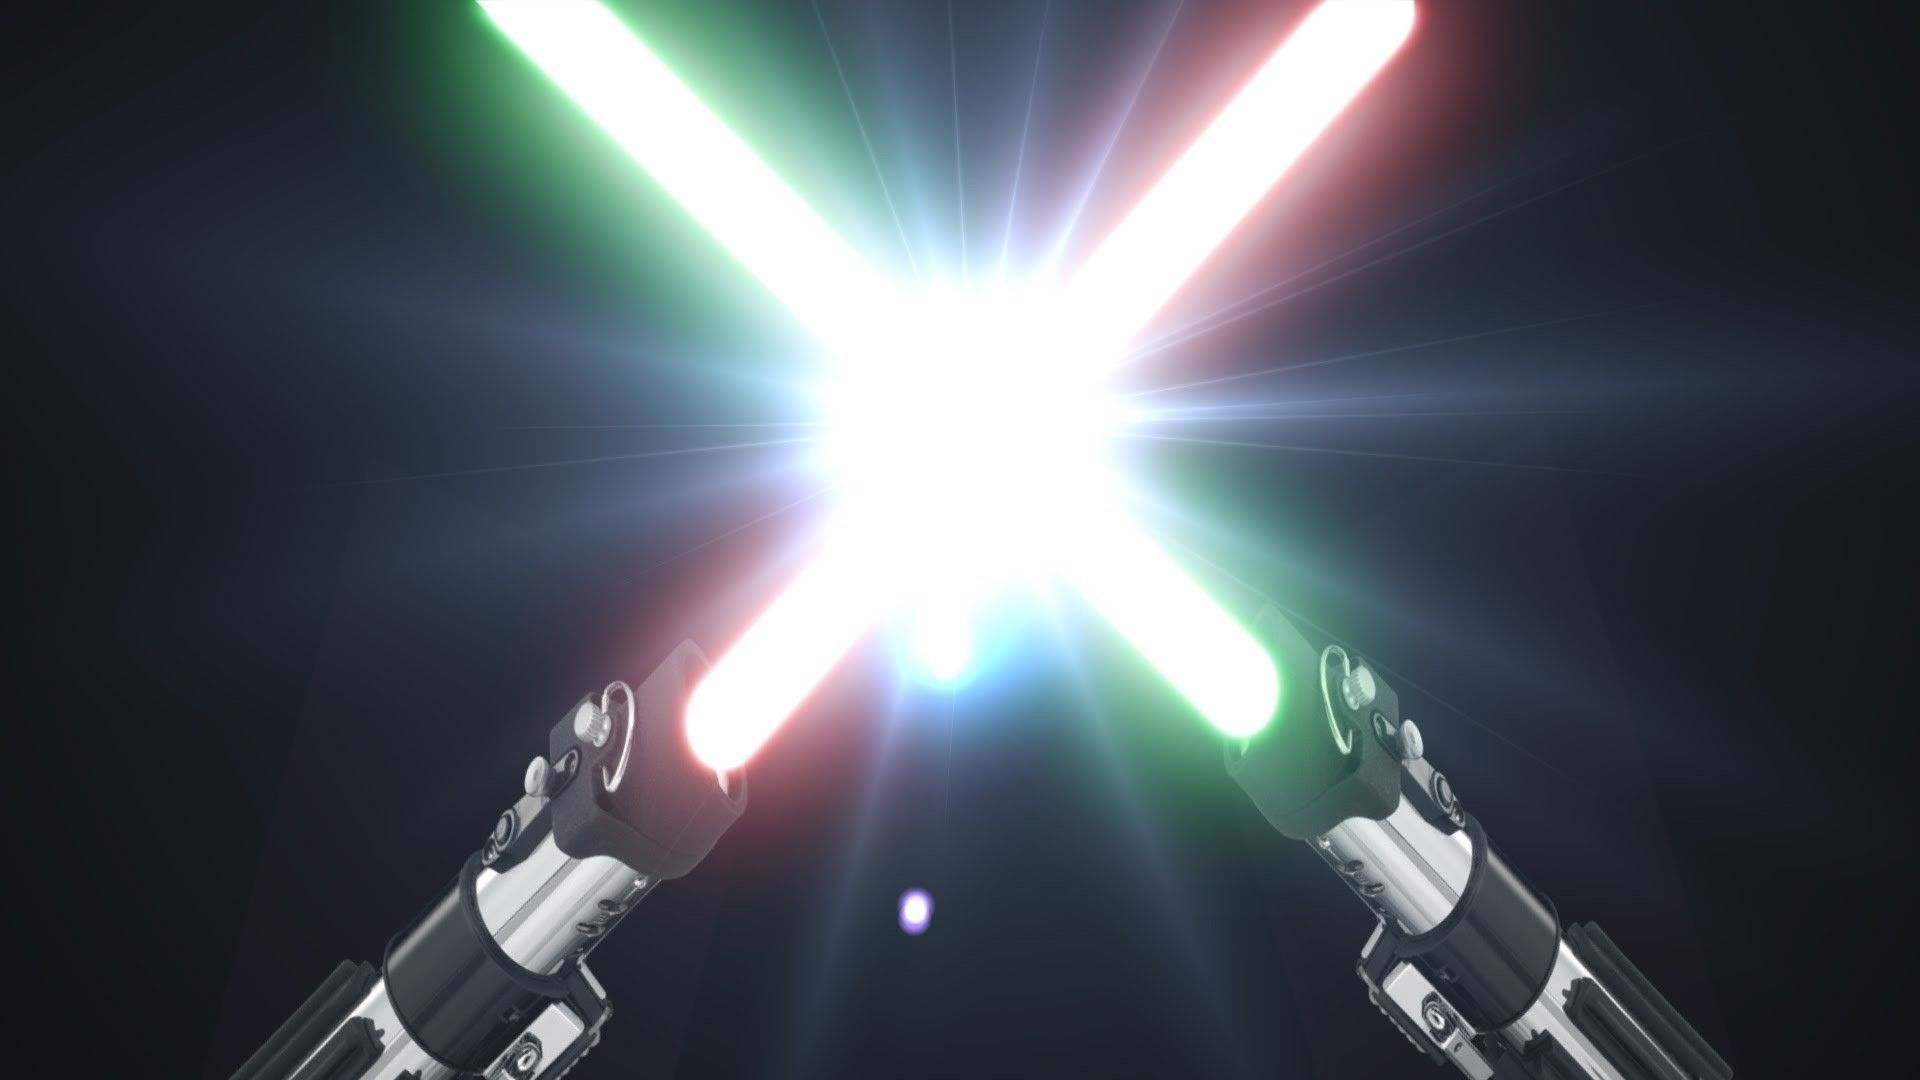 Free download Star Wars Lightsaber Duel Wallpaper - [1920x1080] for your Desktop, Mobile & Tablet. Explore Star Wars Lightsaber Background. Star Wars Lightsaber Wallpaper, Star Wars Lightsaber Background